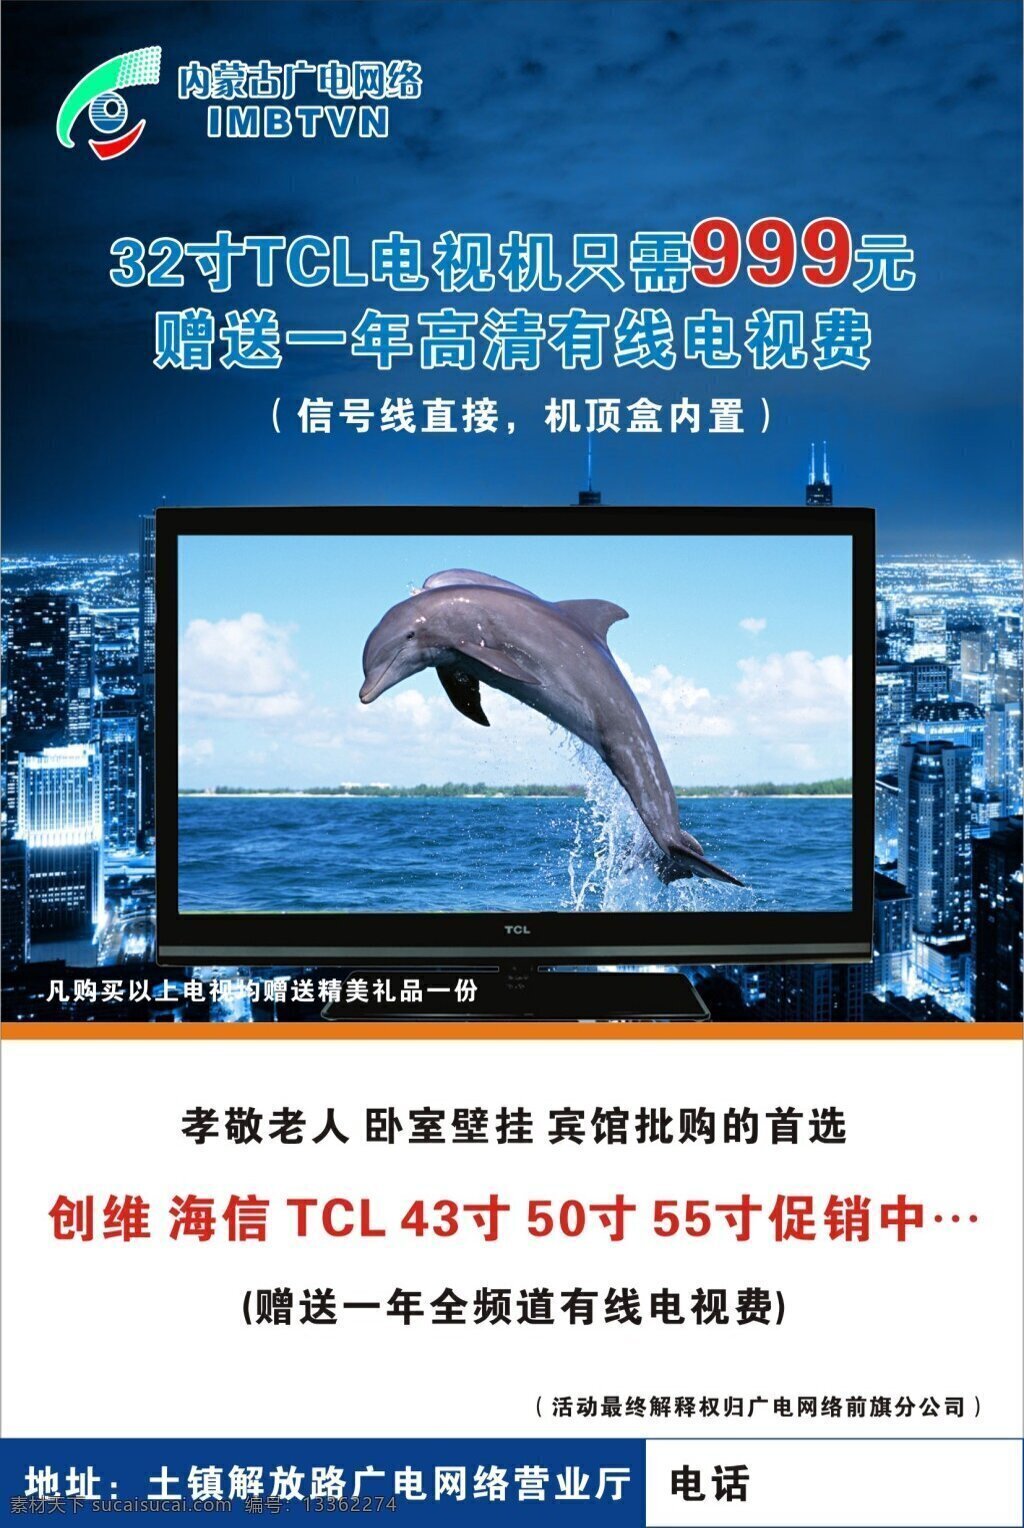 电视机广告 电视机 海豚 tcl 内蒙古 广电 网络 32寸电视 海报 白色